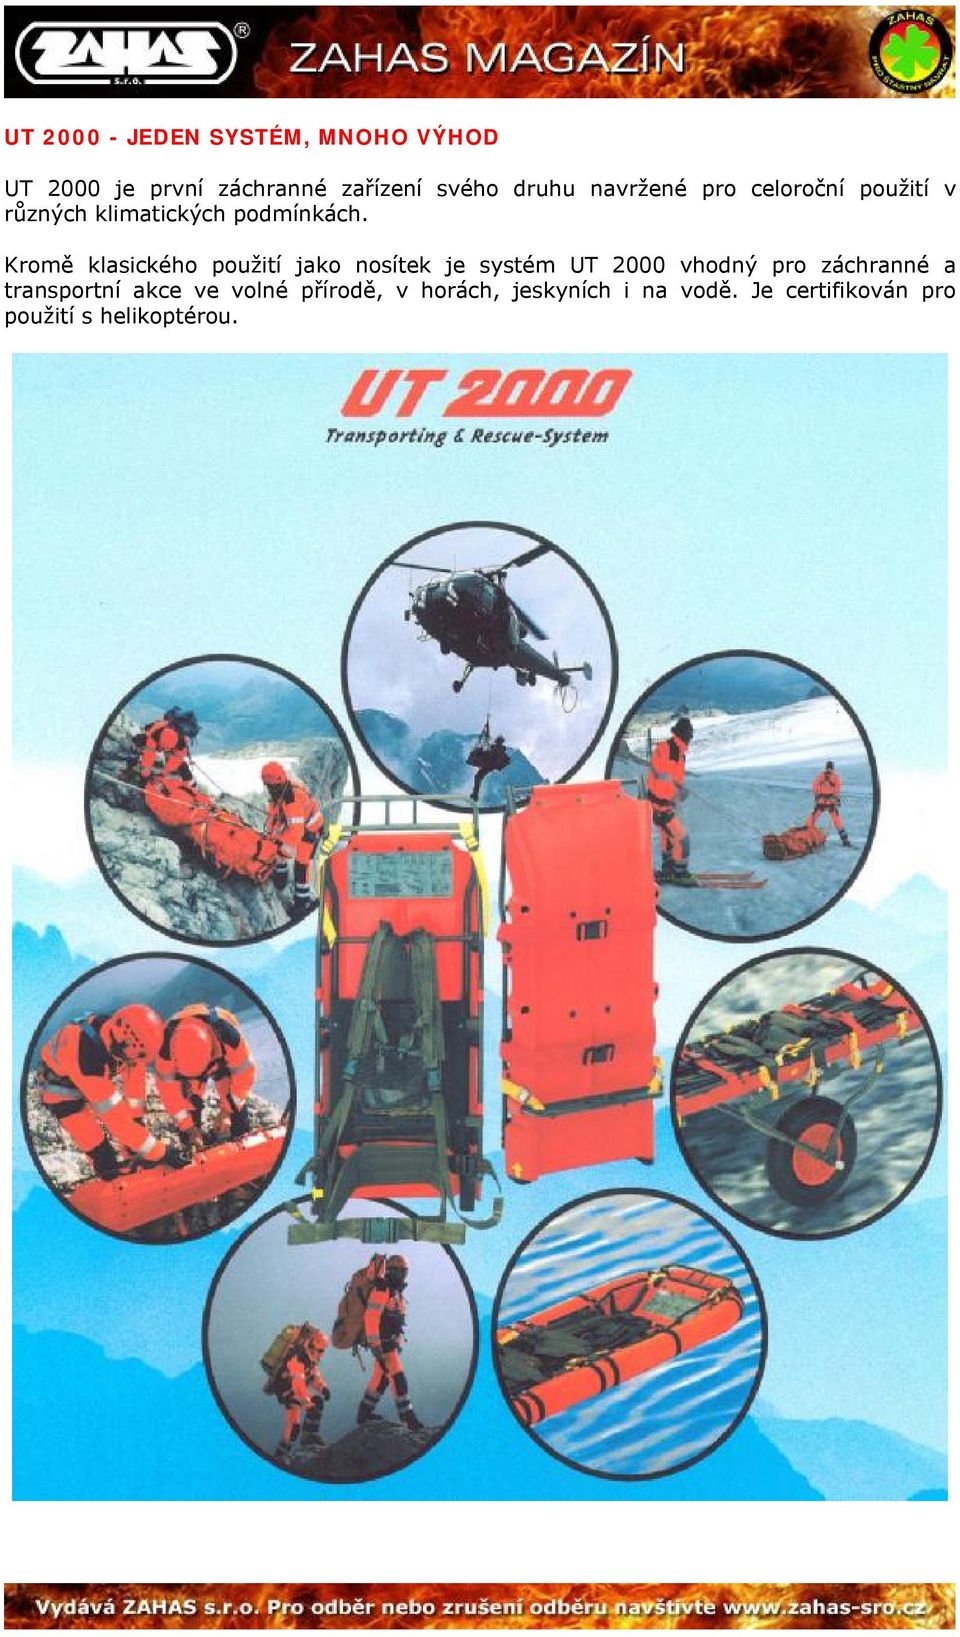 Kromě klasického použití jako nosítek je systém UT 2000 vhodný pro záchranné a